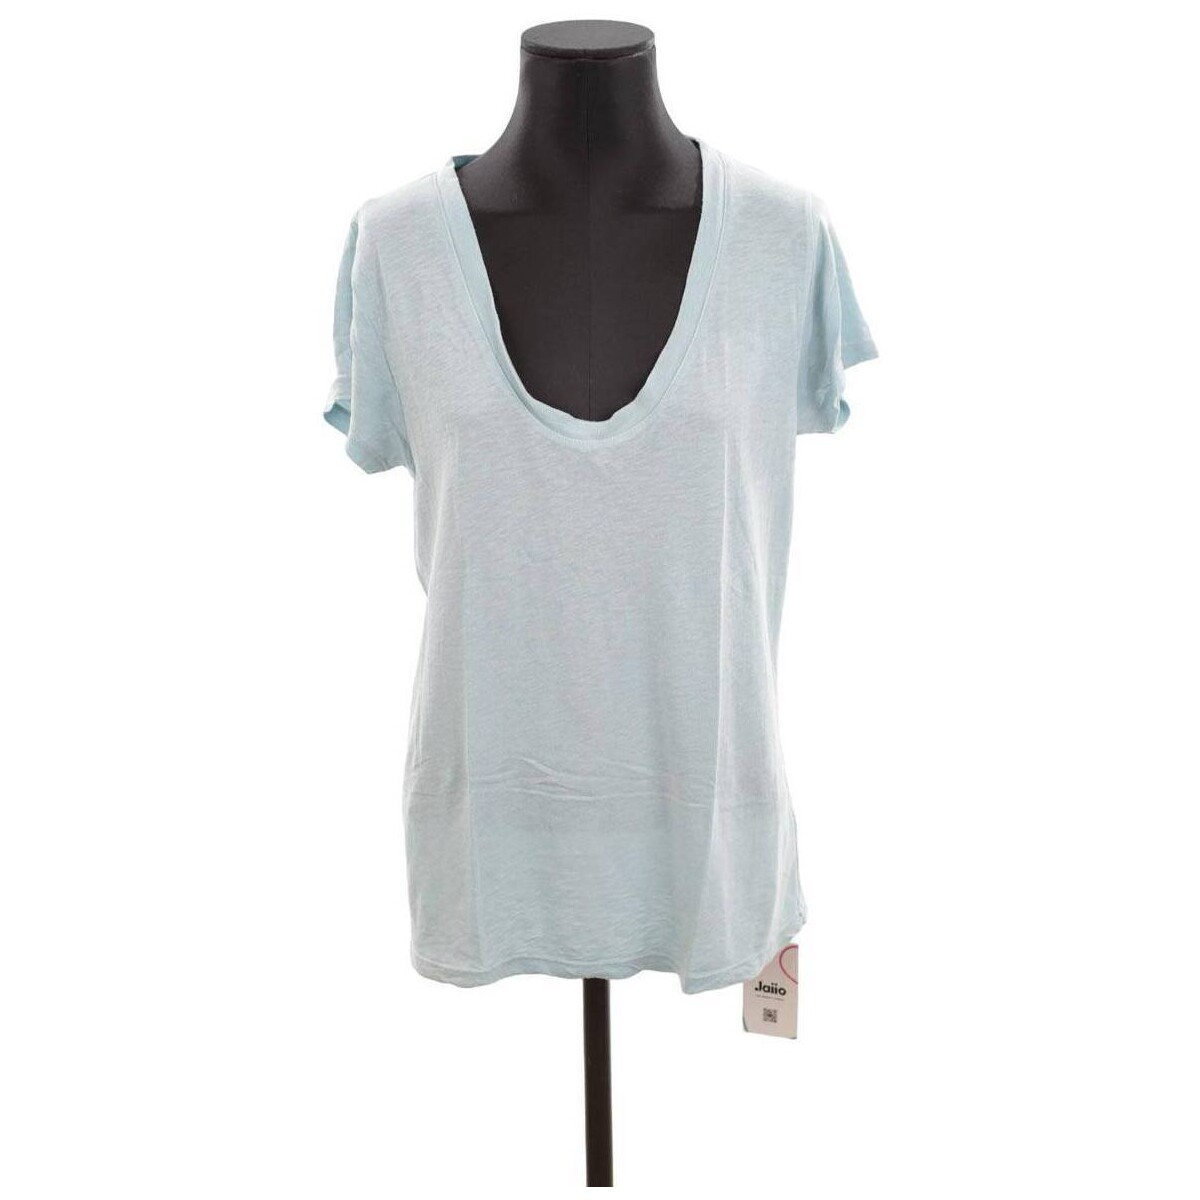 Vêtements Femme Débardeurs / T-shirts sans manche Zadig & Voltaire Top en coton Bleu